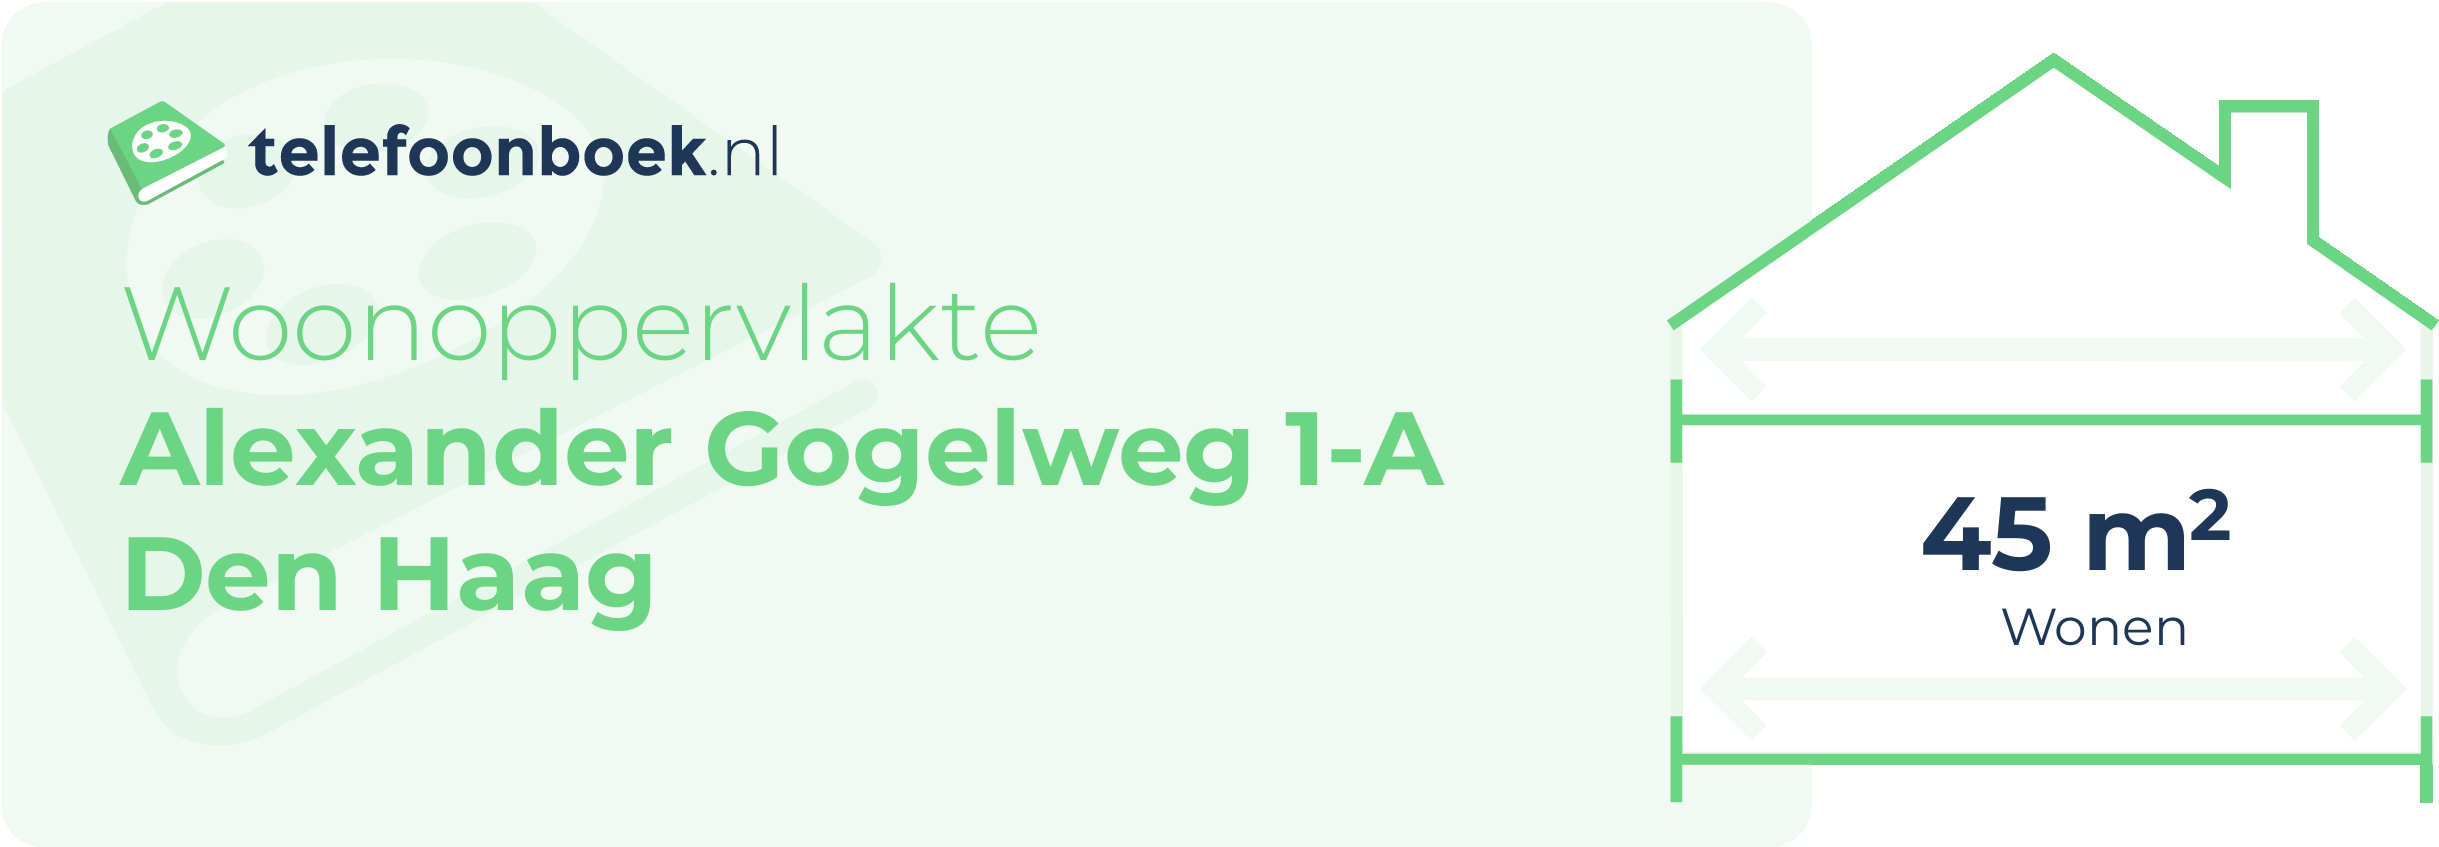 Woonoppervlakte Alexander Gogelweg 1-A Den Haag